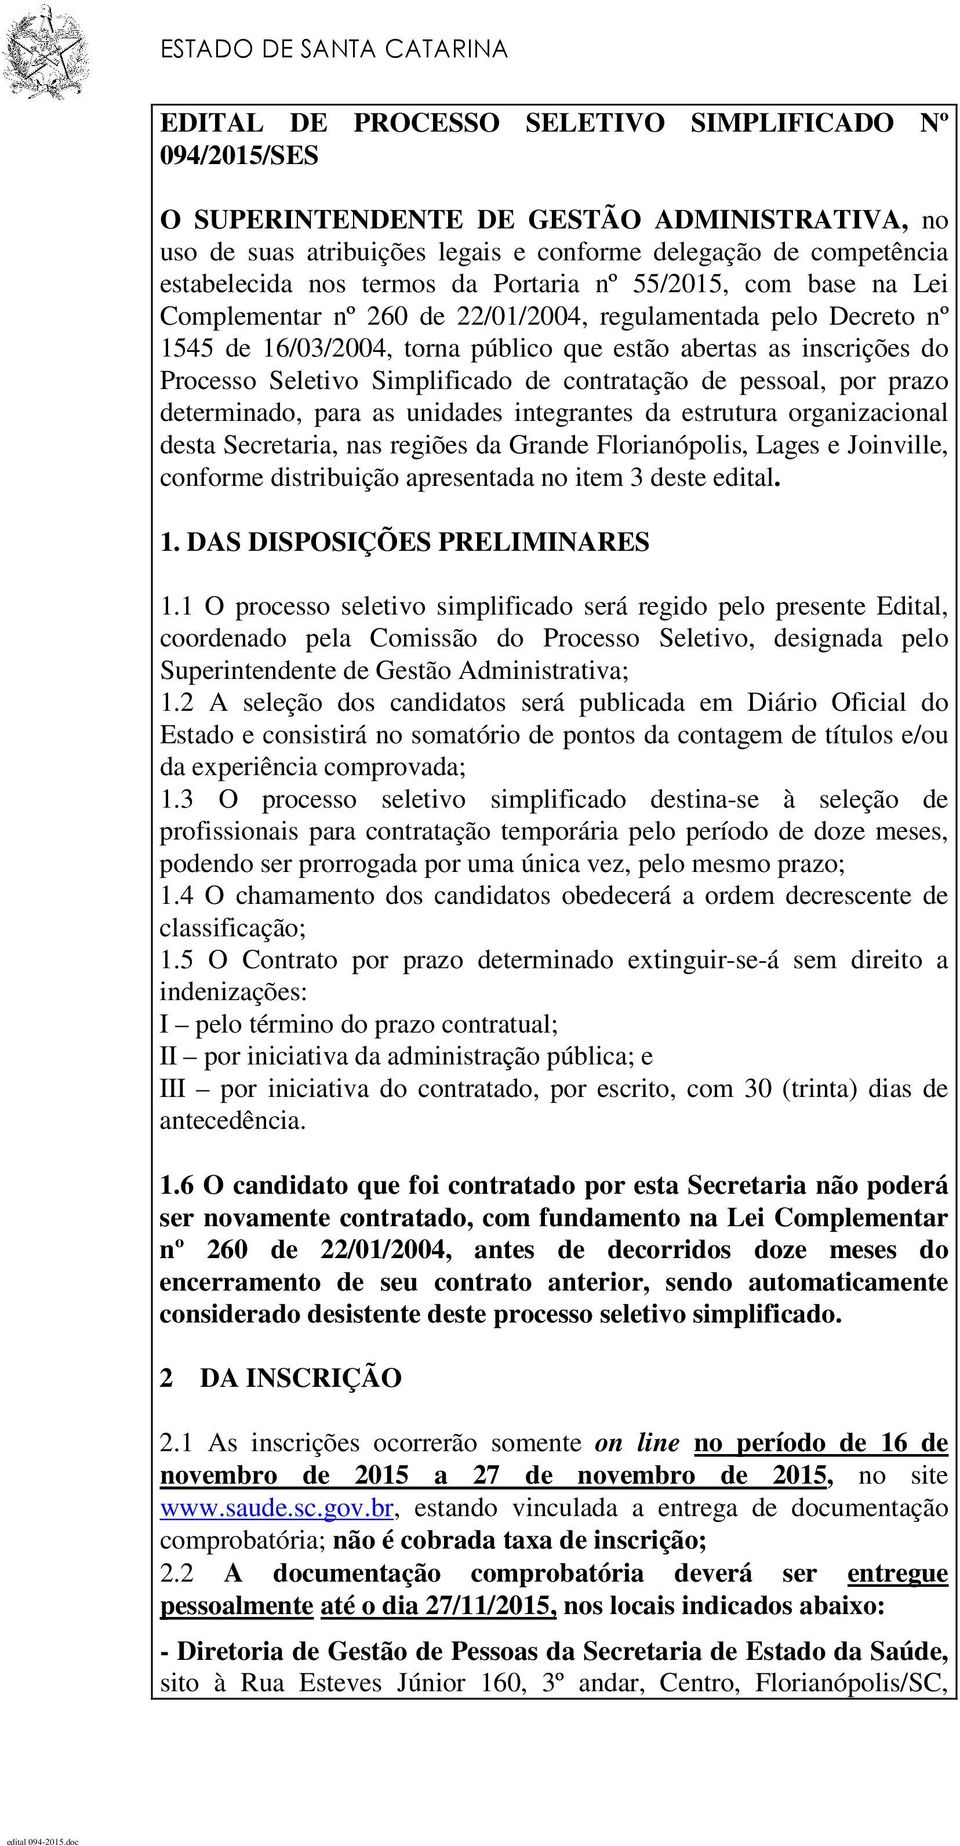 Processo Seletivo Simplificado de contratação de pessoal, por prazo determinado, para as unidades integrantes da estrutura organizacional desta Secretaria, nas regiões da Grande Florianópolis, Lages